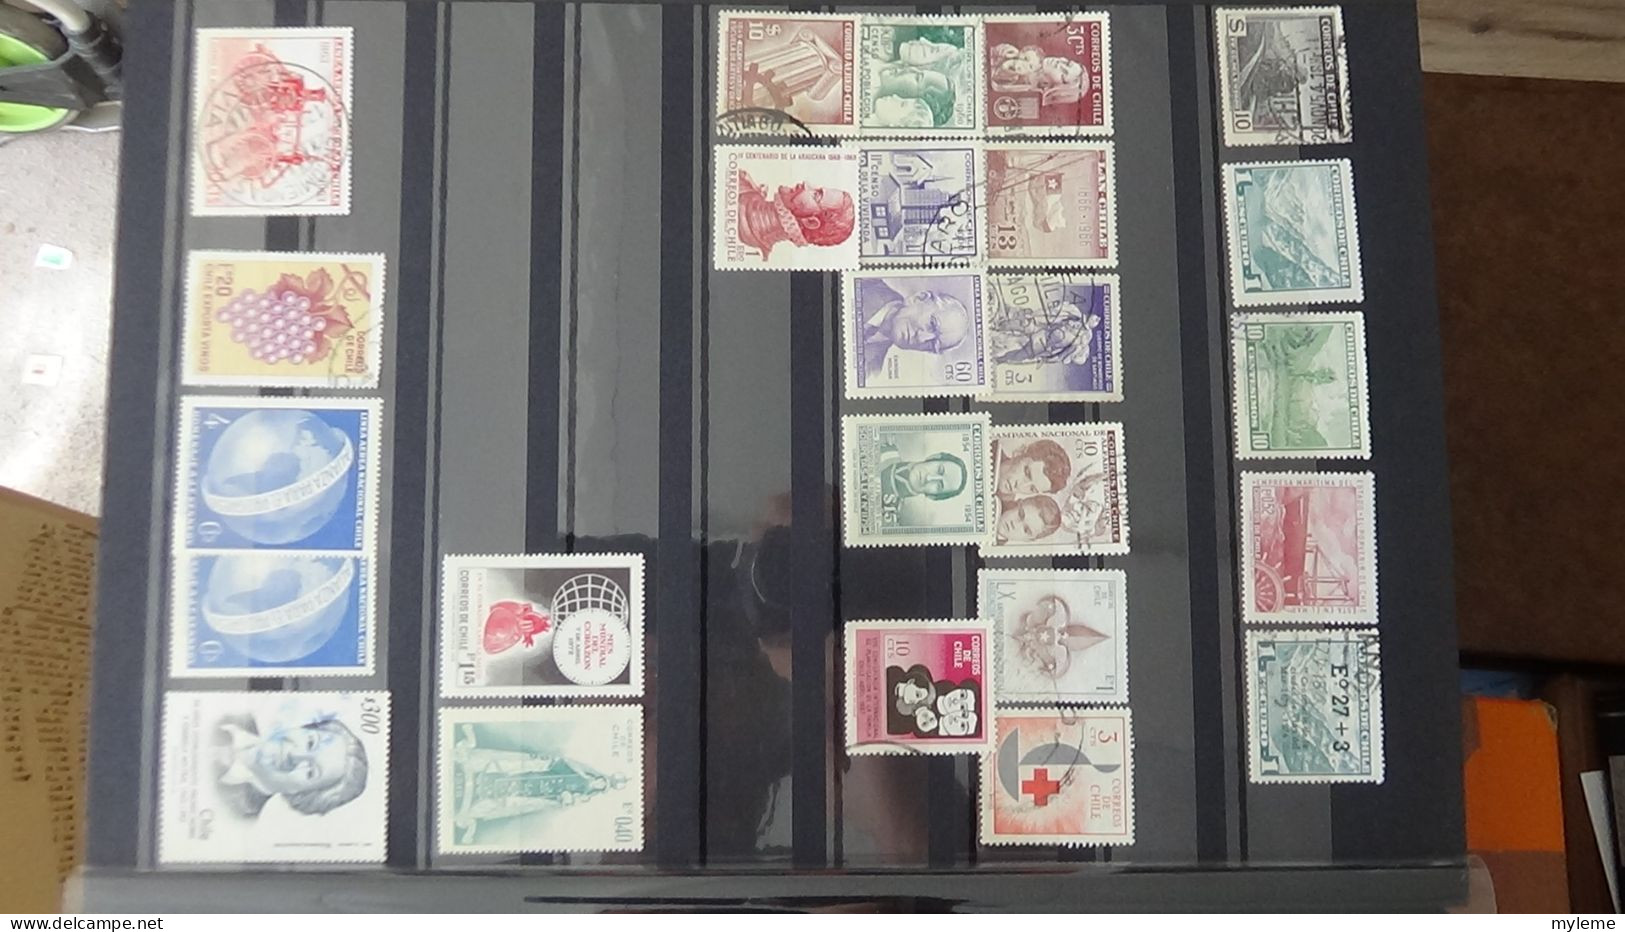 BF30 Ensemble de timbres de divers pays + Merson N° 122 **.(2 petites pites de rouille au dos) Cote 3200 euros